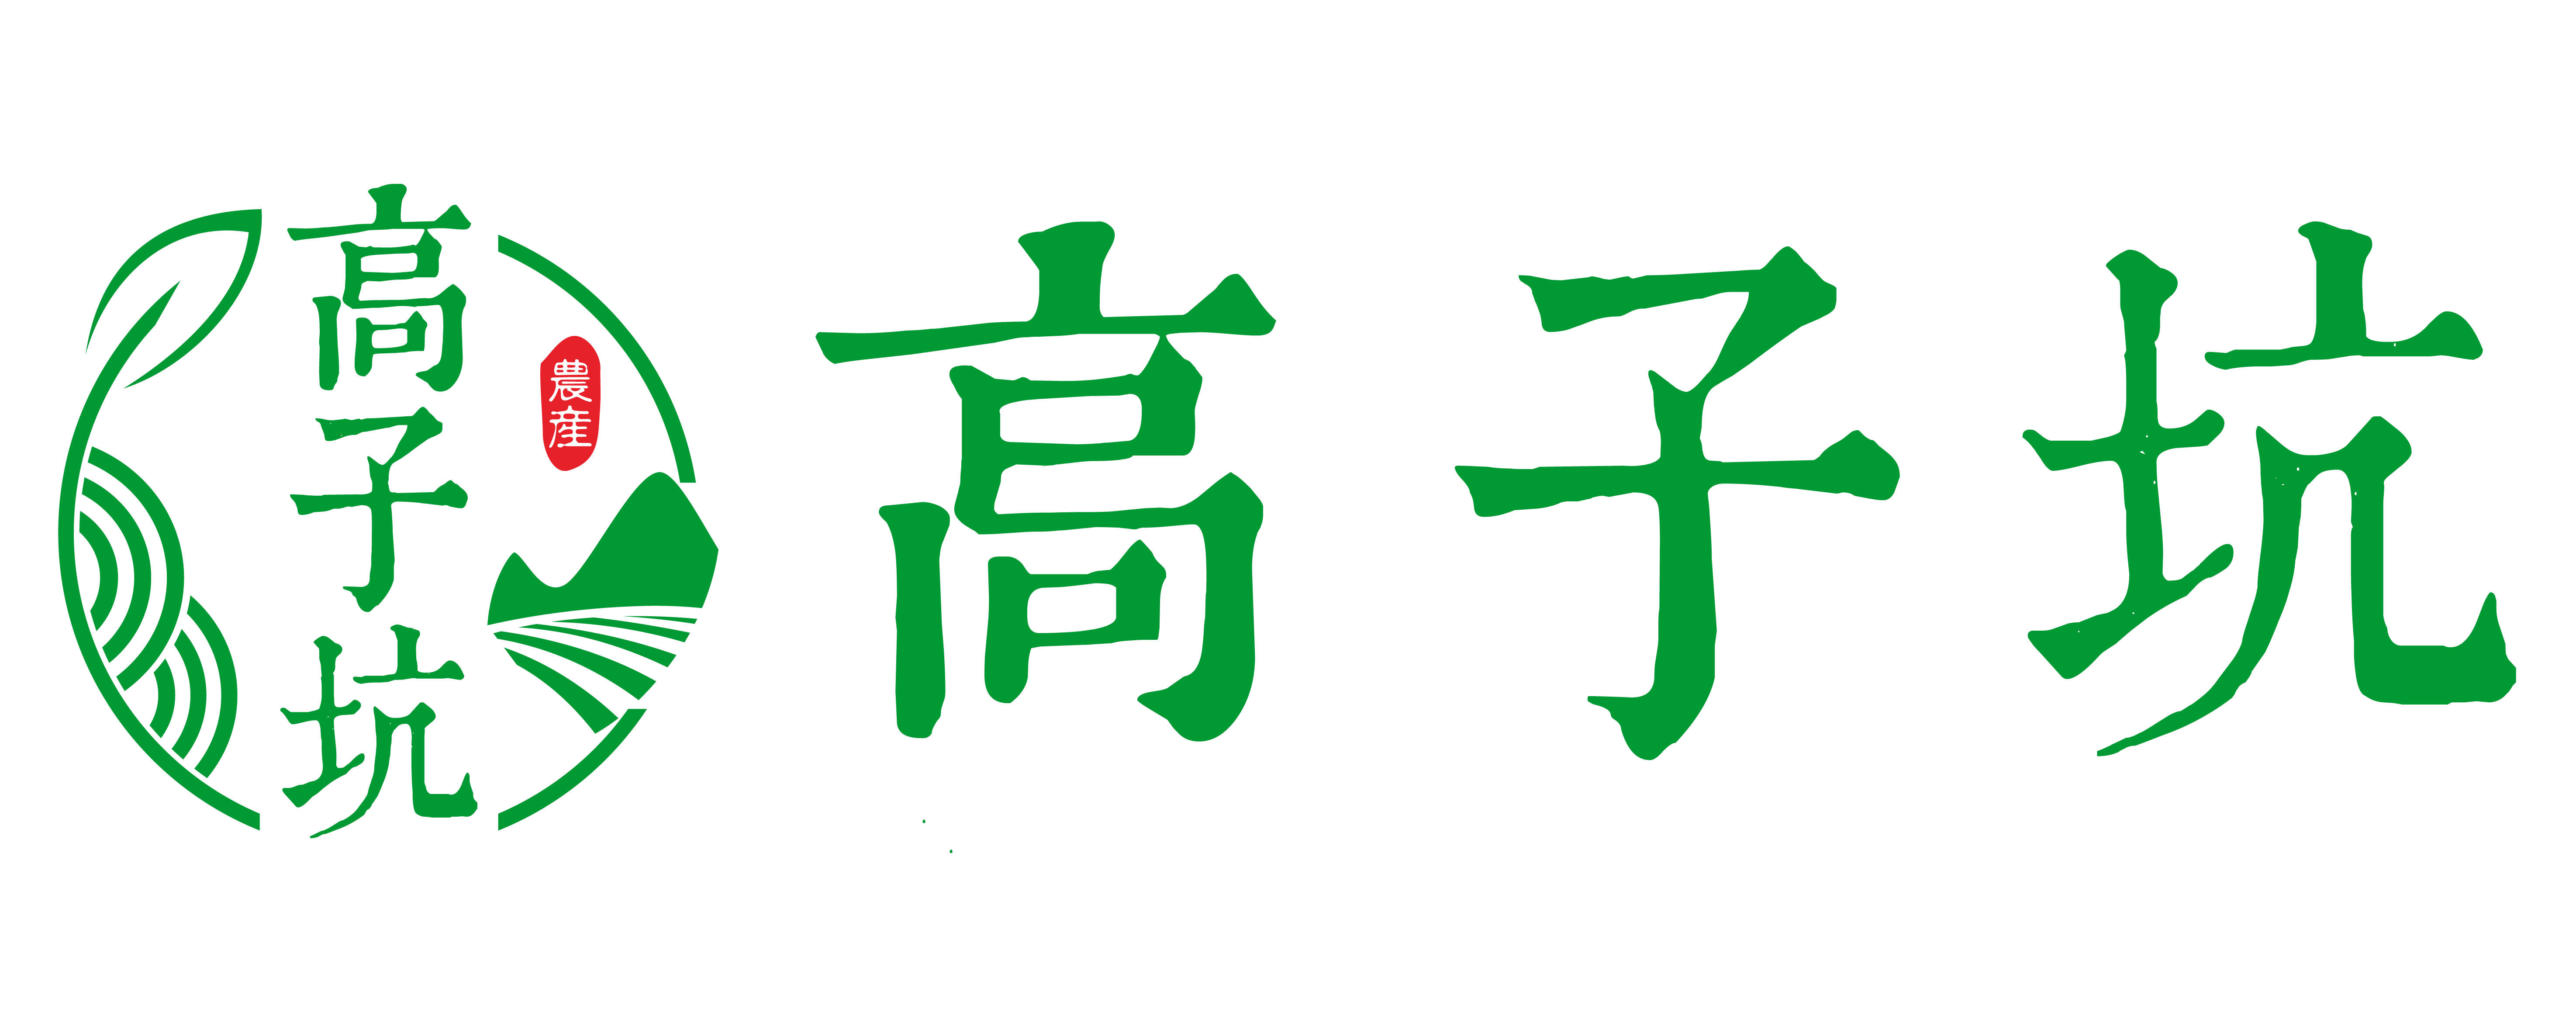 高子坑logo_长方形.png